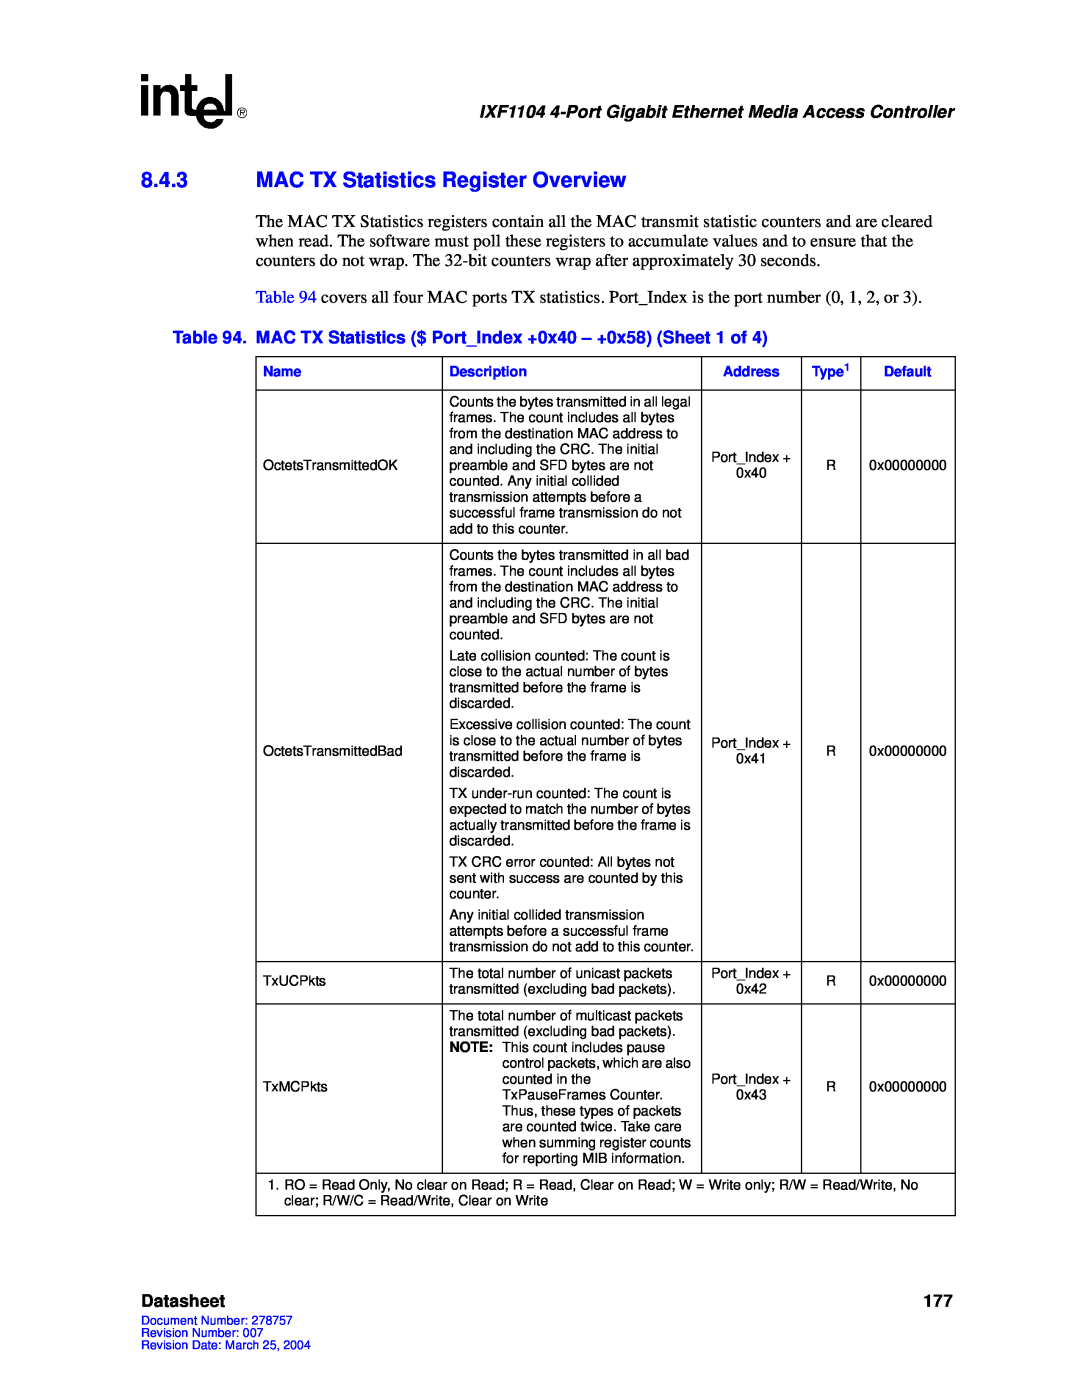 Intel IXF1104 manual 8.4.3MAC TX Statistics Register Overview, Datasheet 